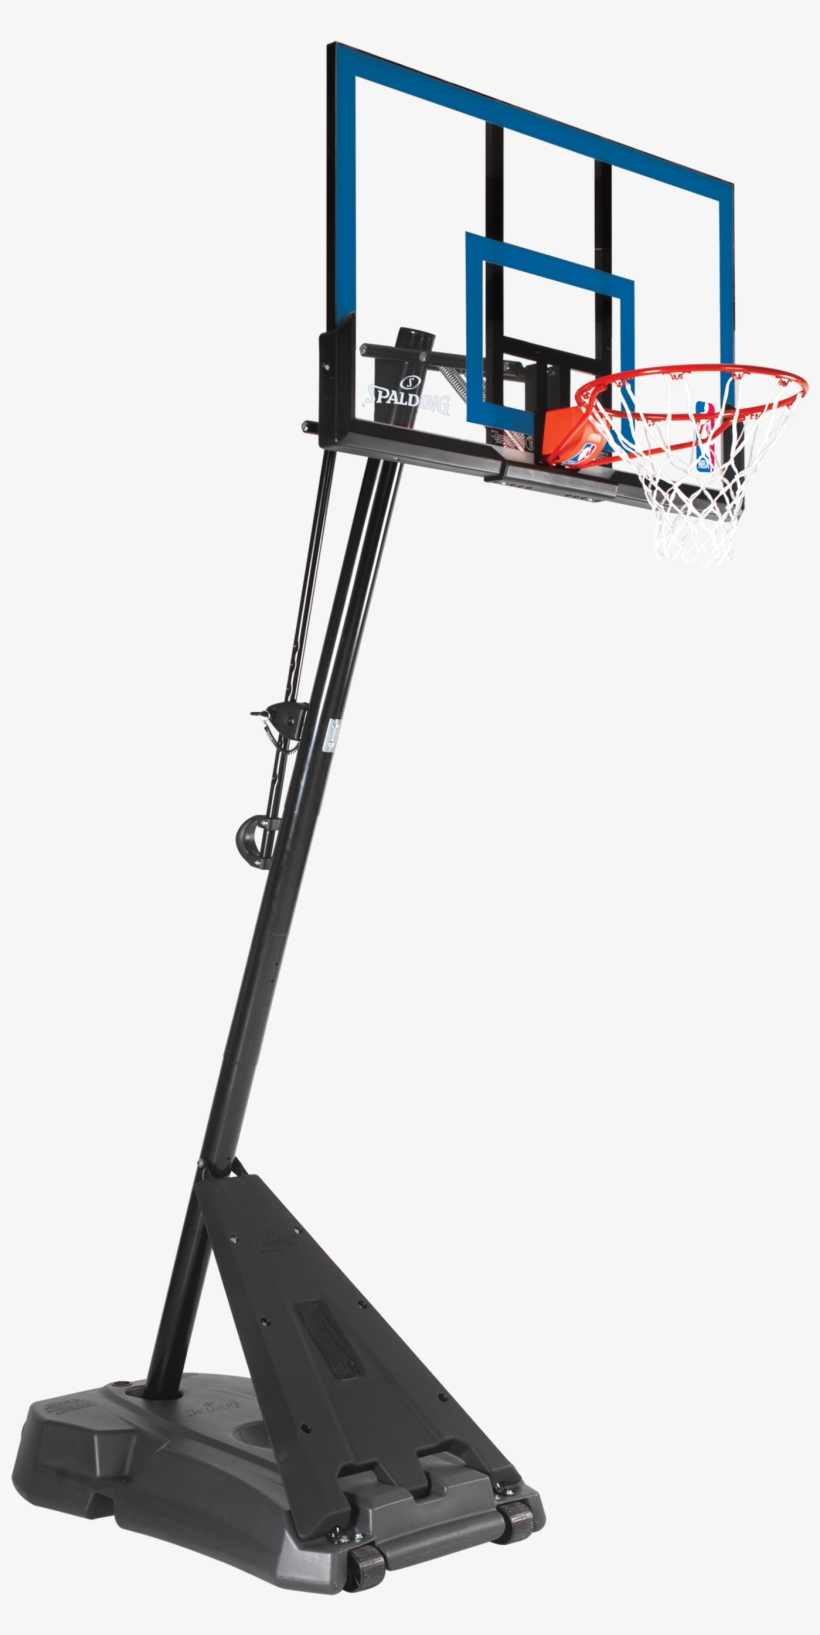 Hercules® Exactaheight™ Portable Basketball Hoop System - Spalding 52 Inch Portable Basketball System, transparent png #9551848